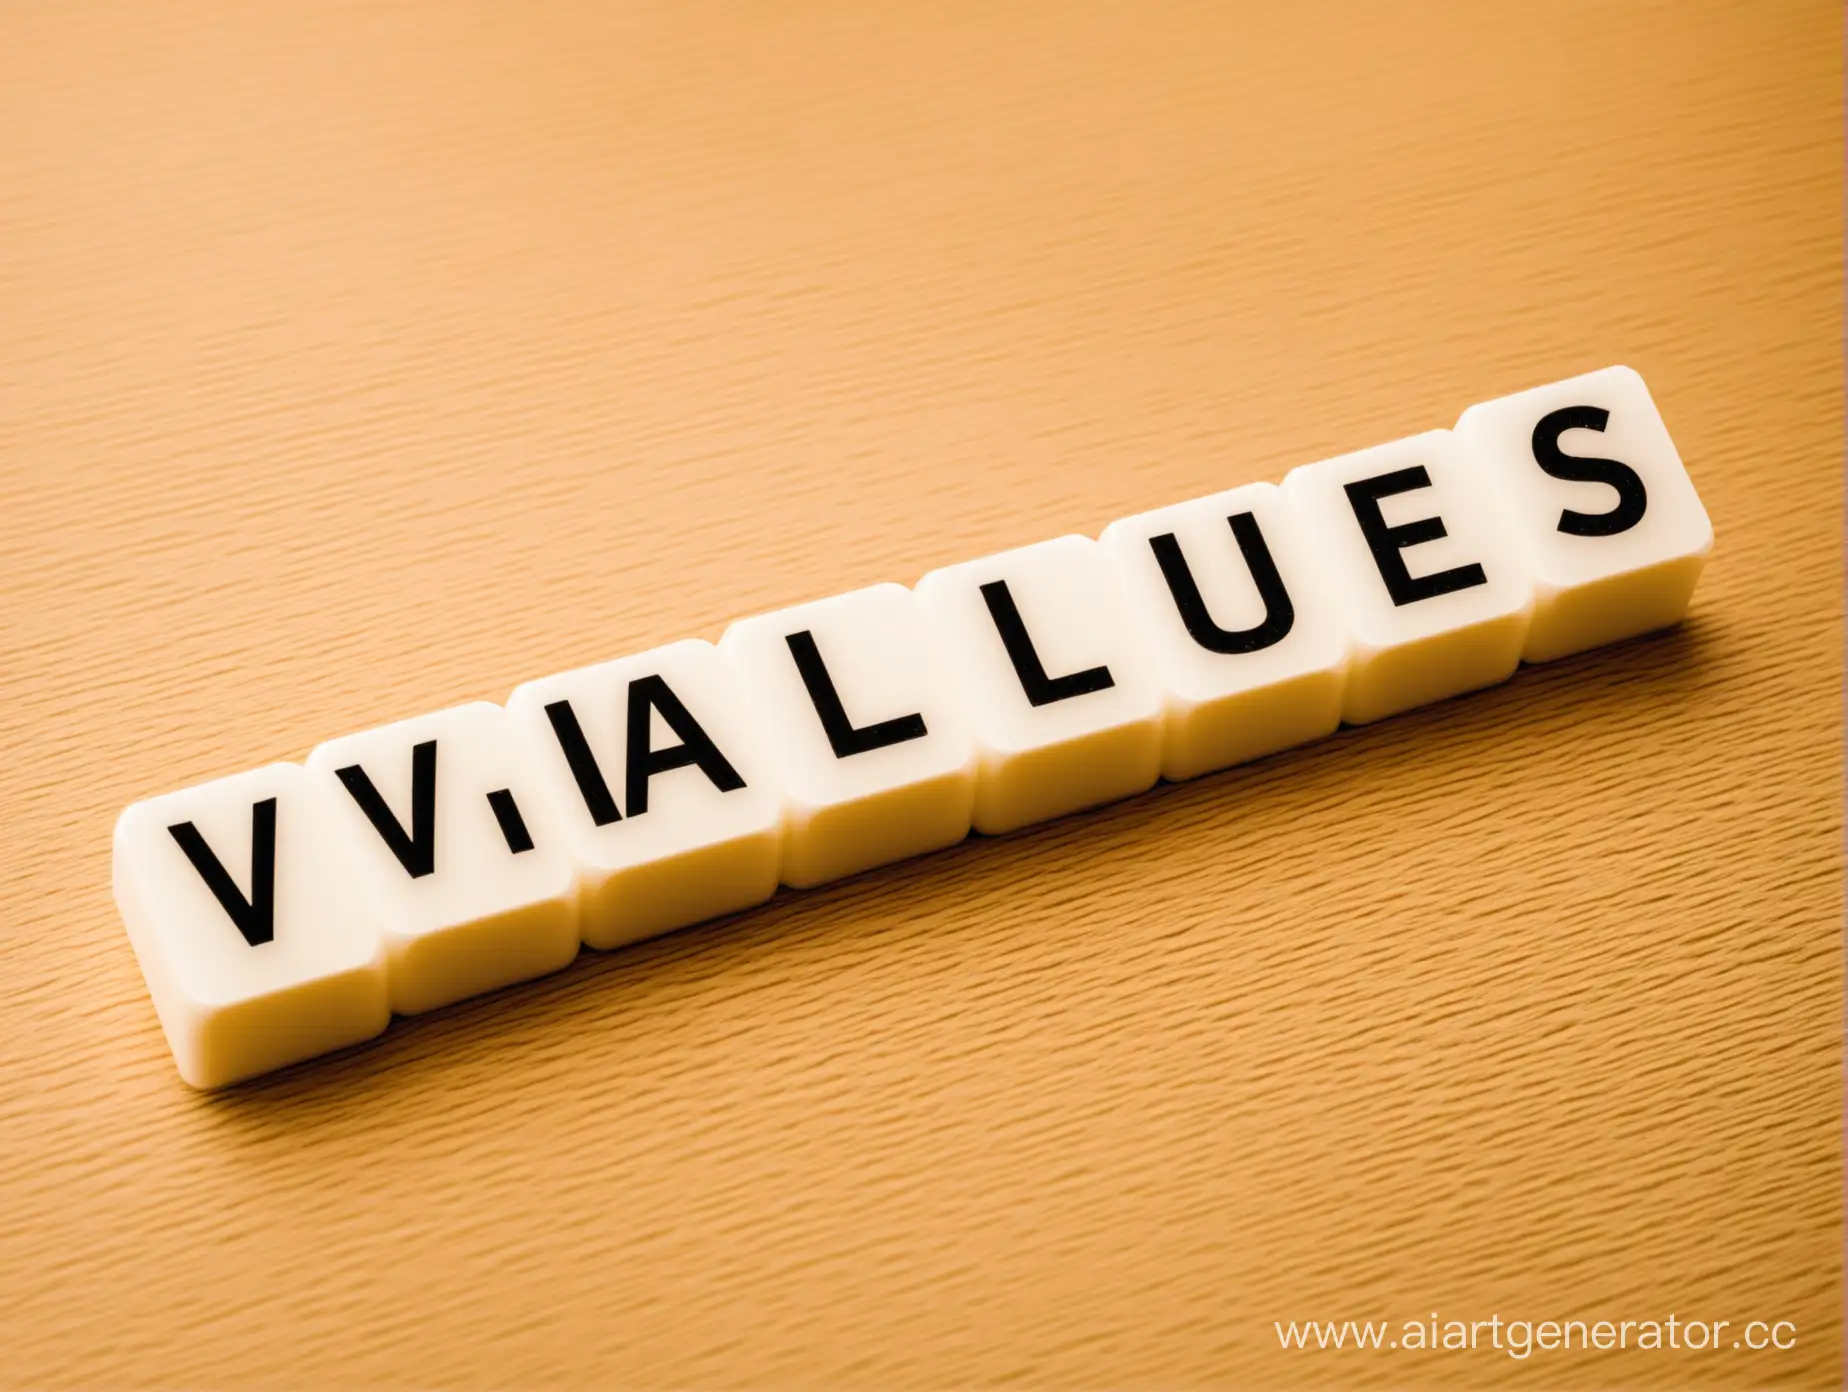 values
